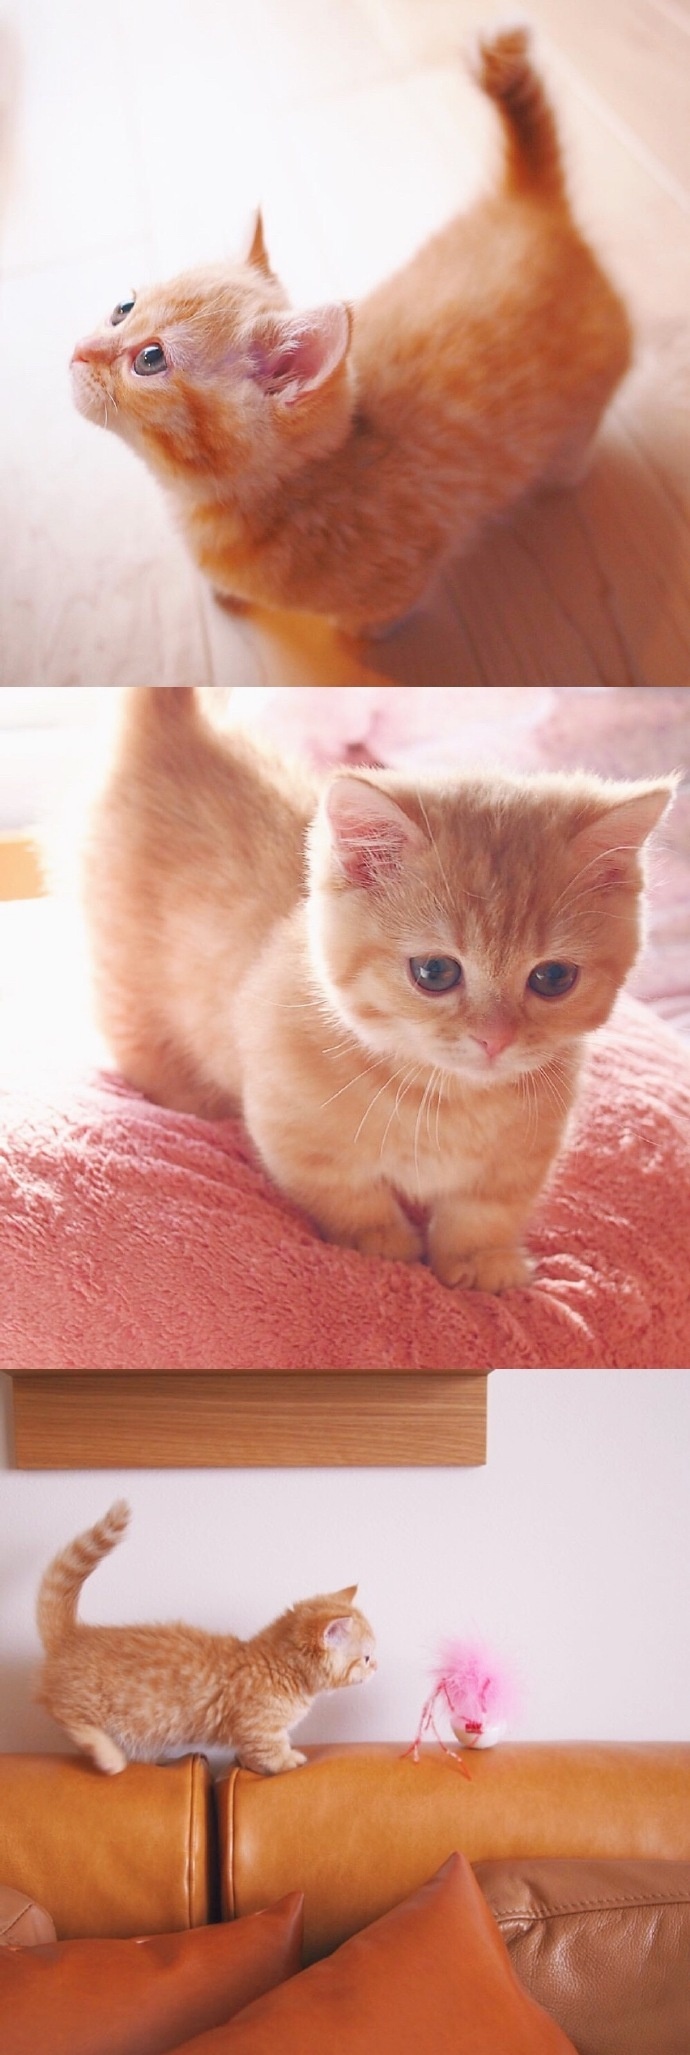 猫的图片可爱 很萌的橘猫图片(2)